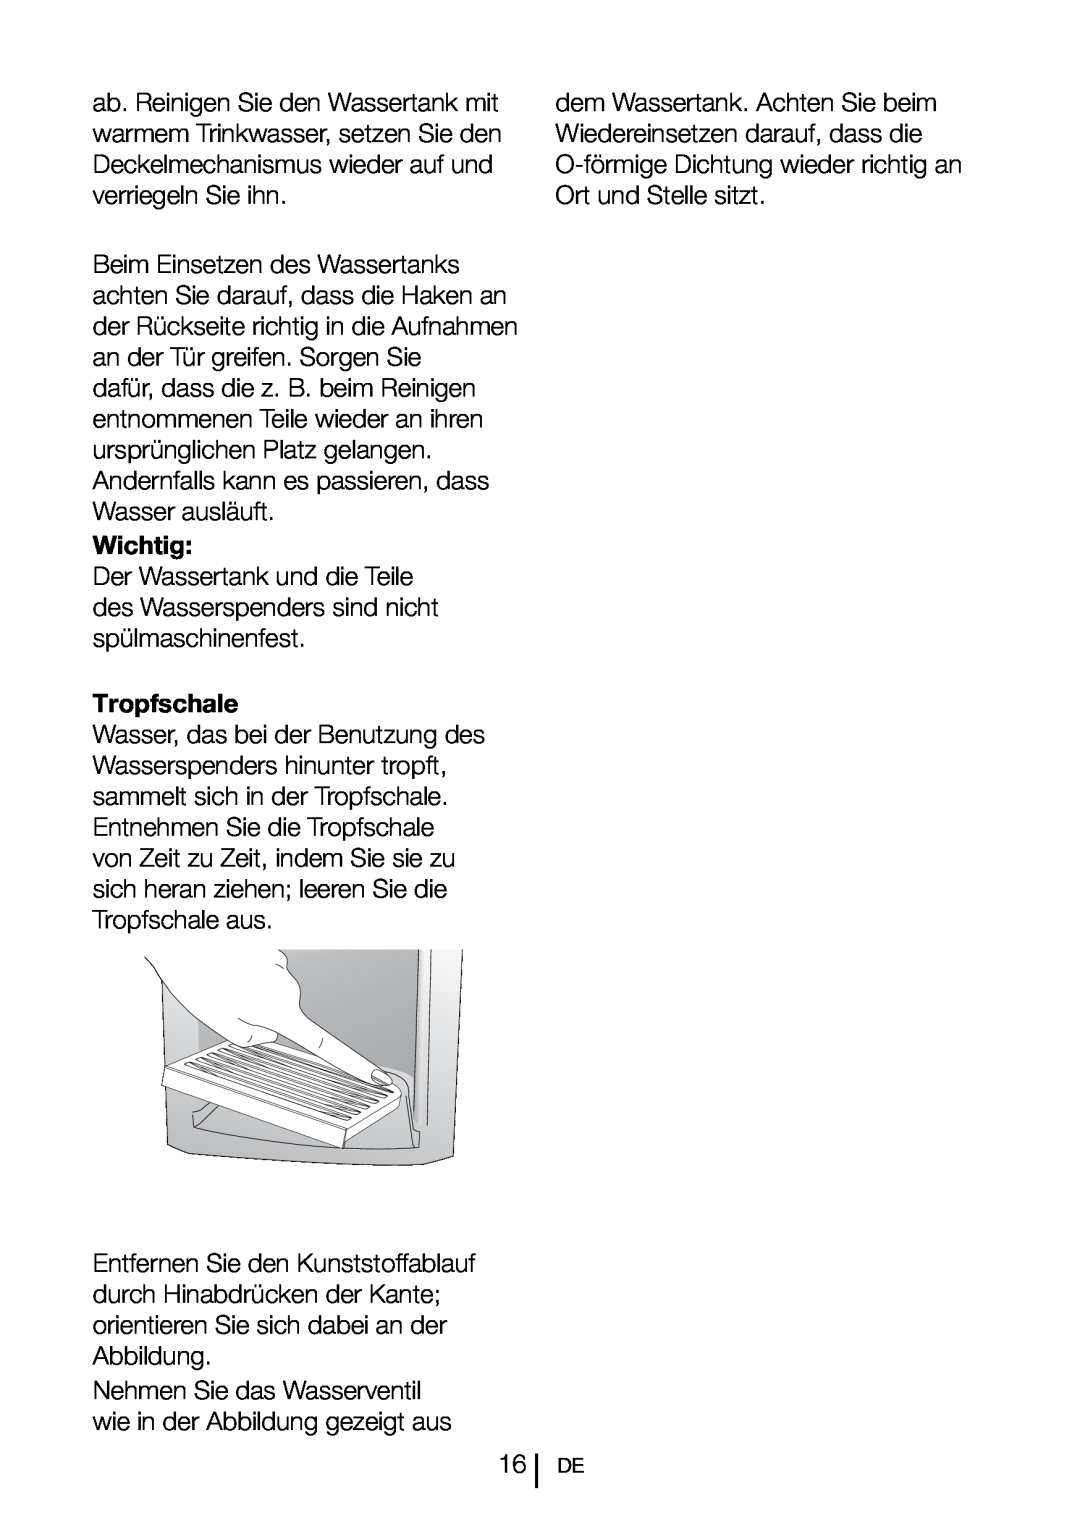 Blomberg SND 9681 XD operating instructions Wichtig, Tropfschale 